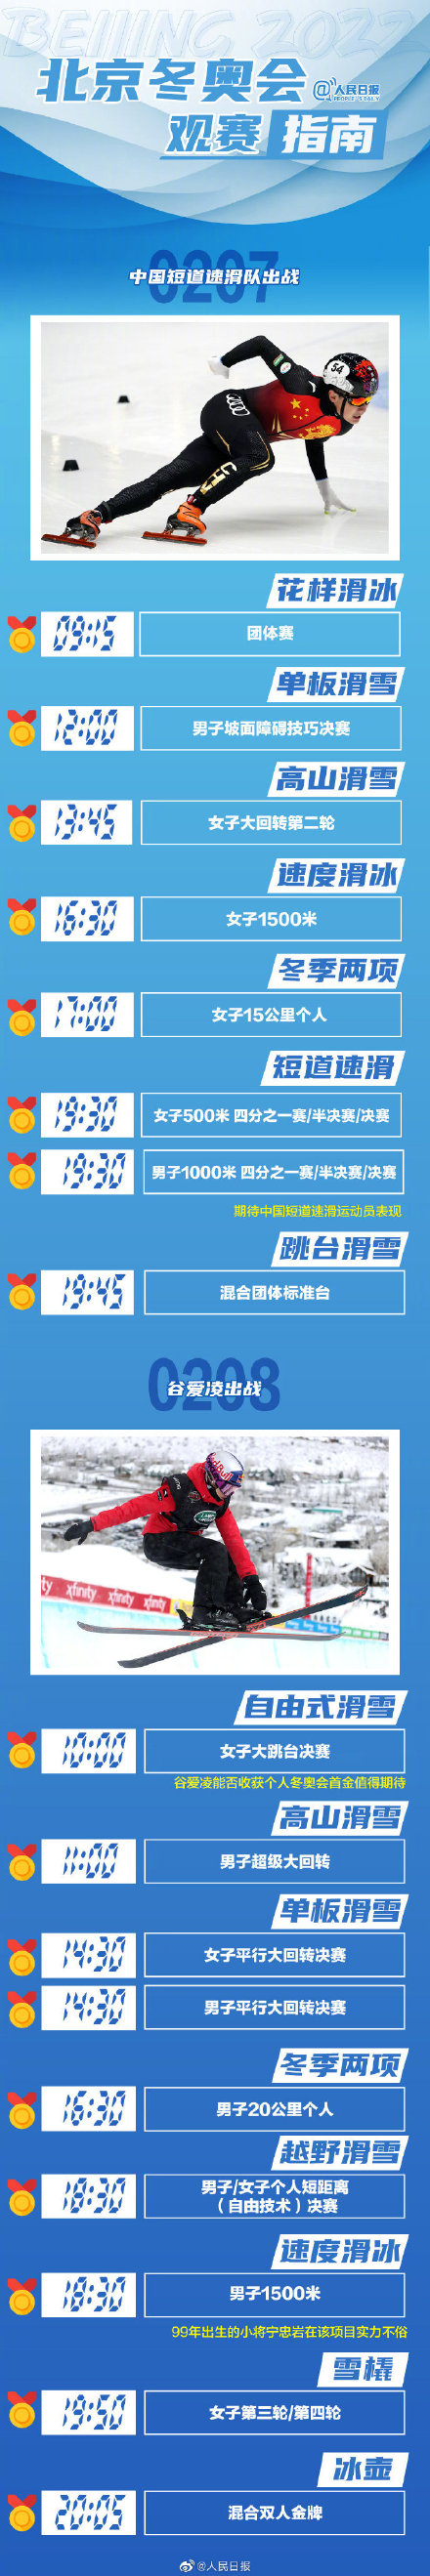 北京2022年冬奥会赛程 北京冬奥会金牌赛事指南